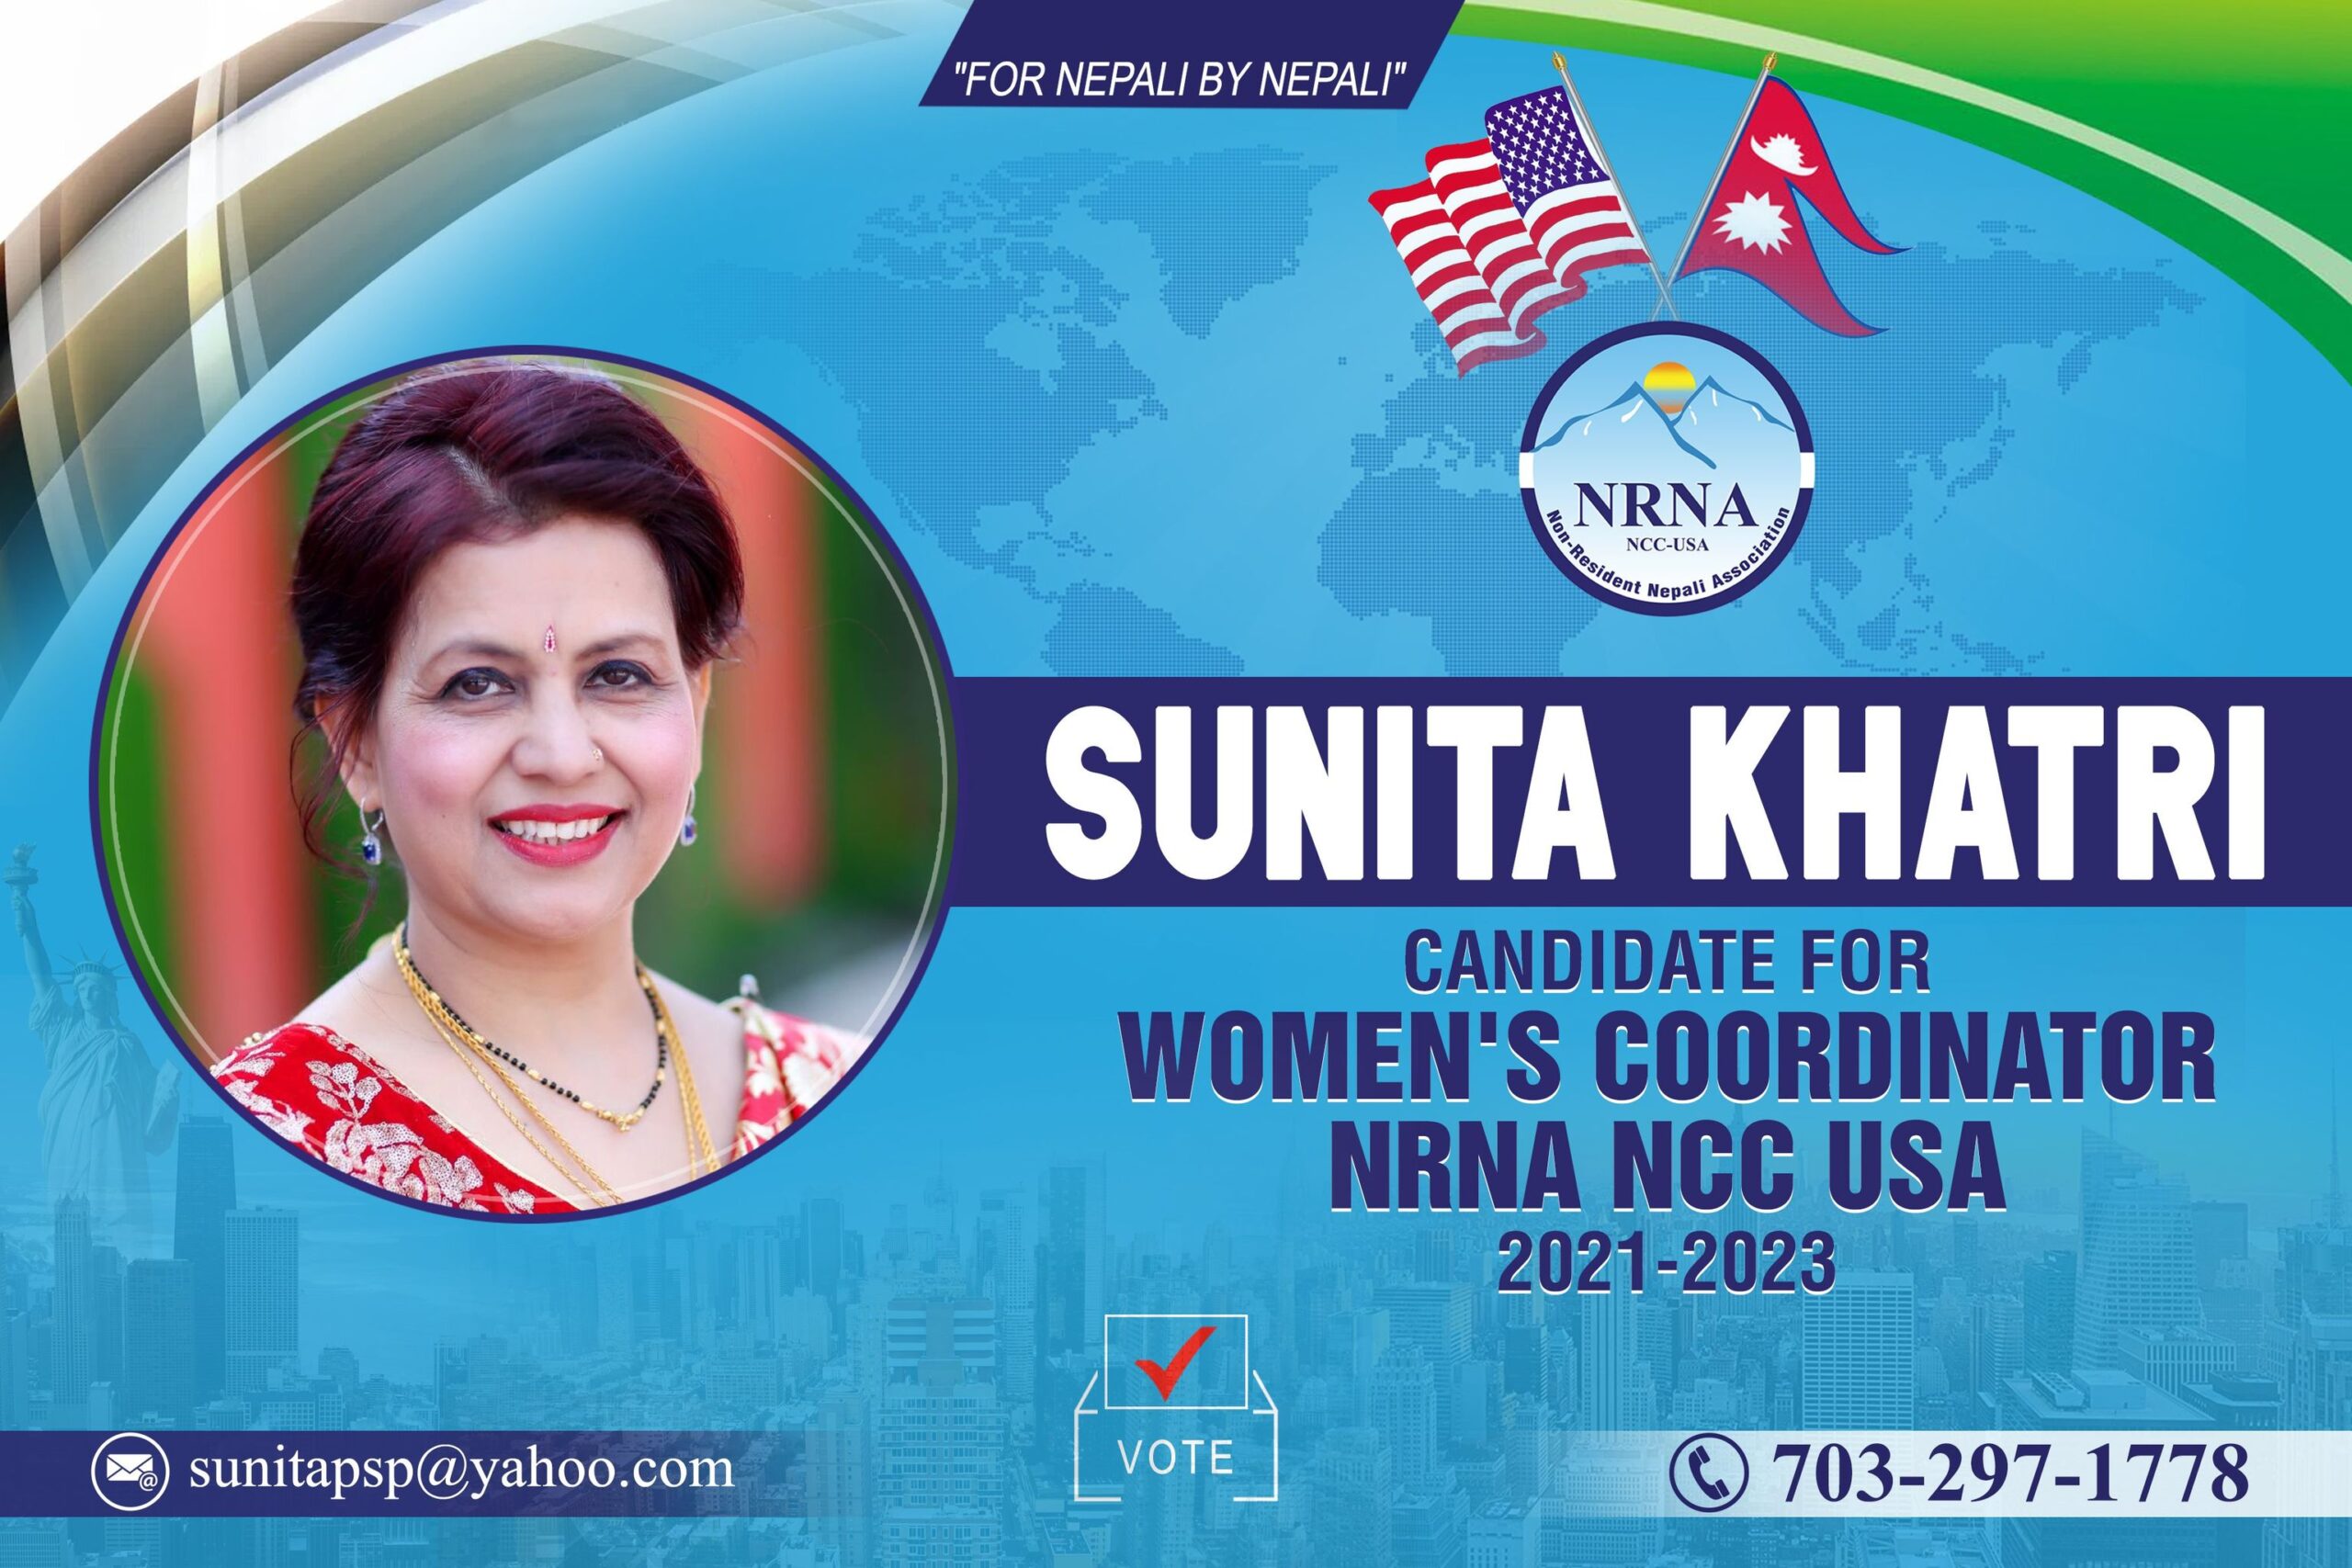 सुनिता खत्रीद्दारा एनआरएनए महिला संयोजक पदमा उमेद्वारी